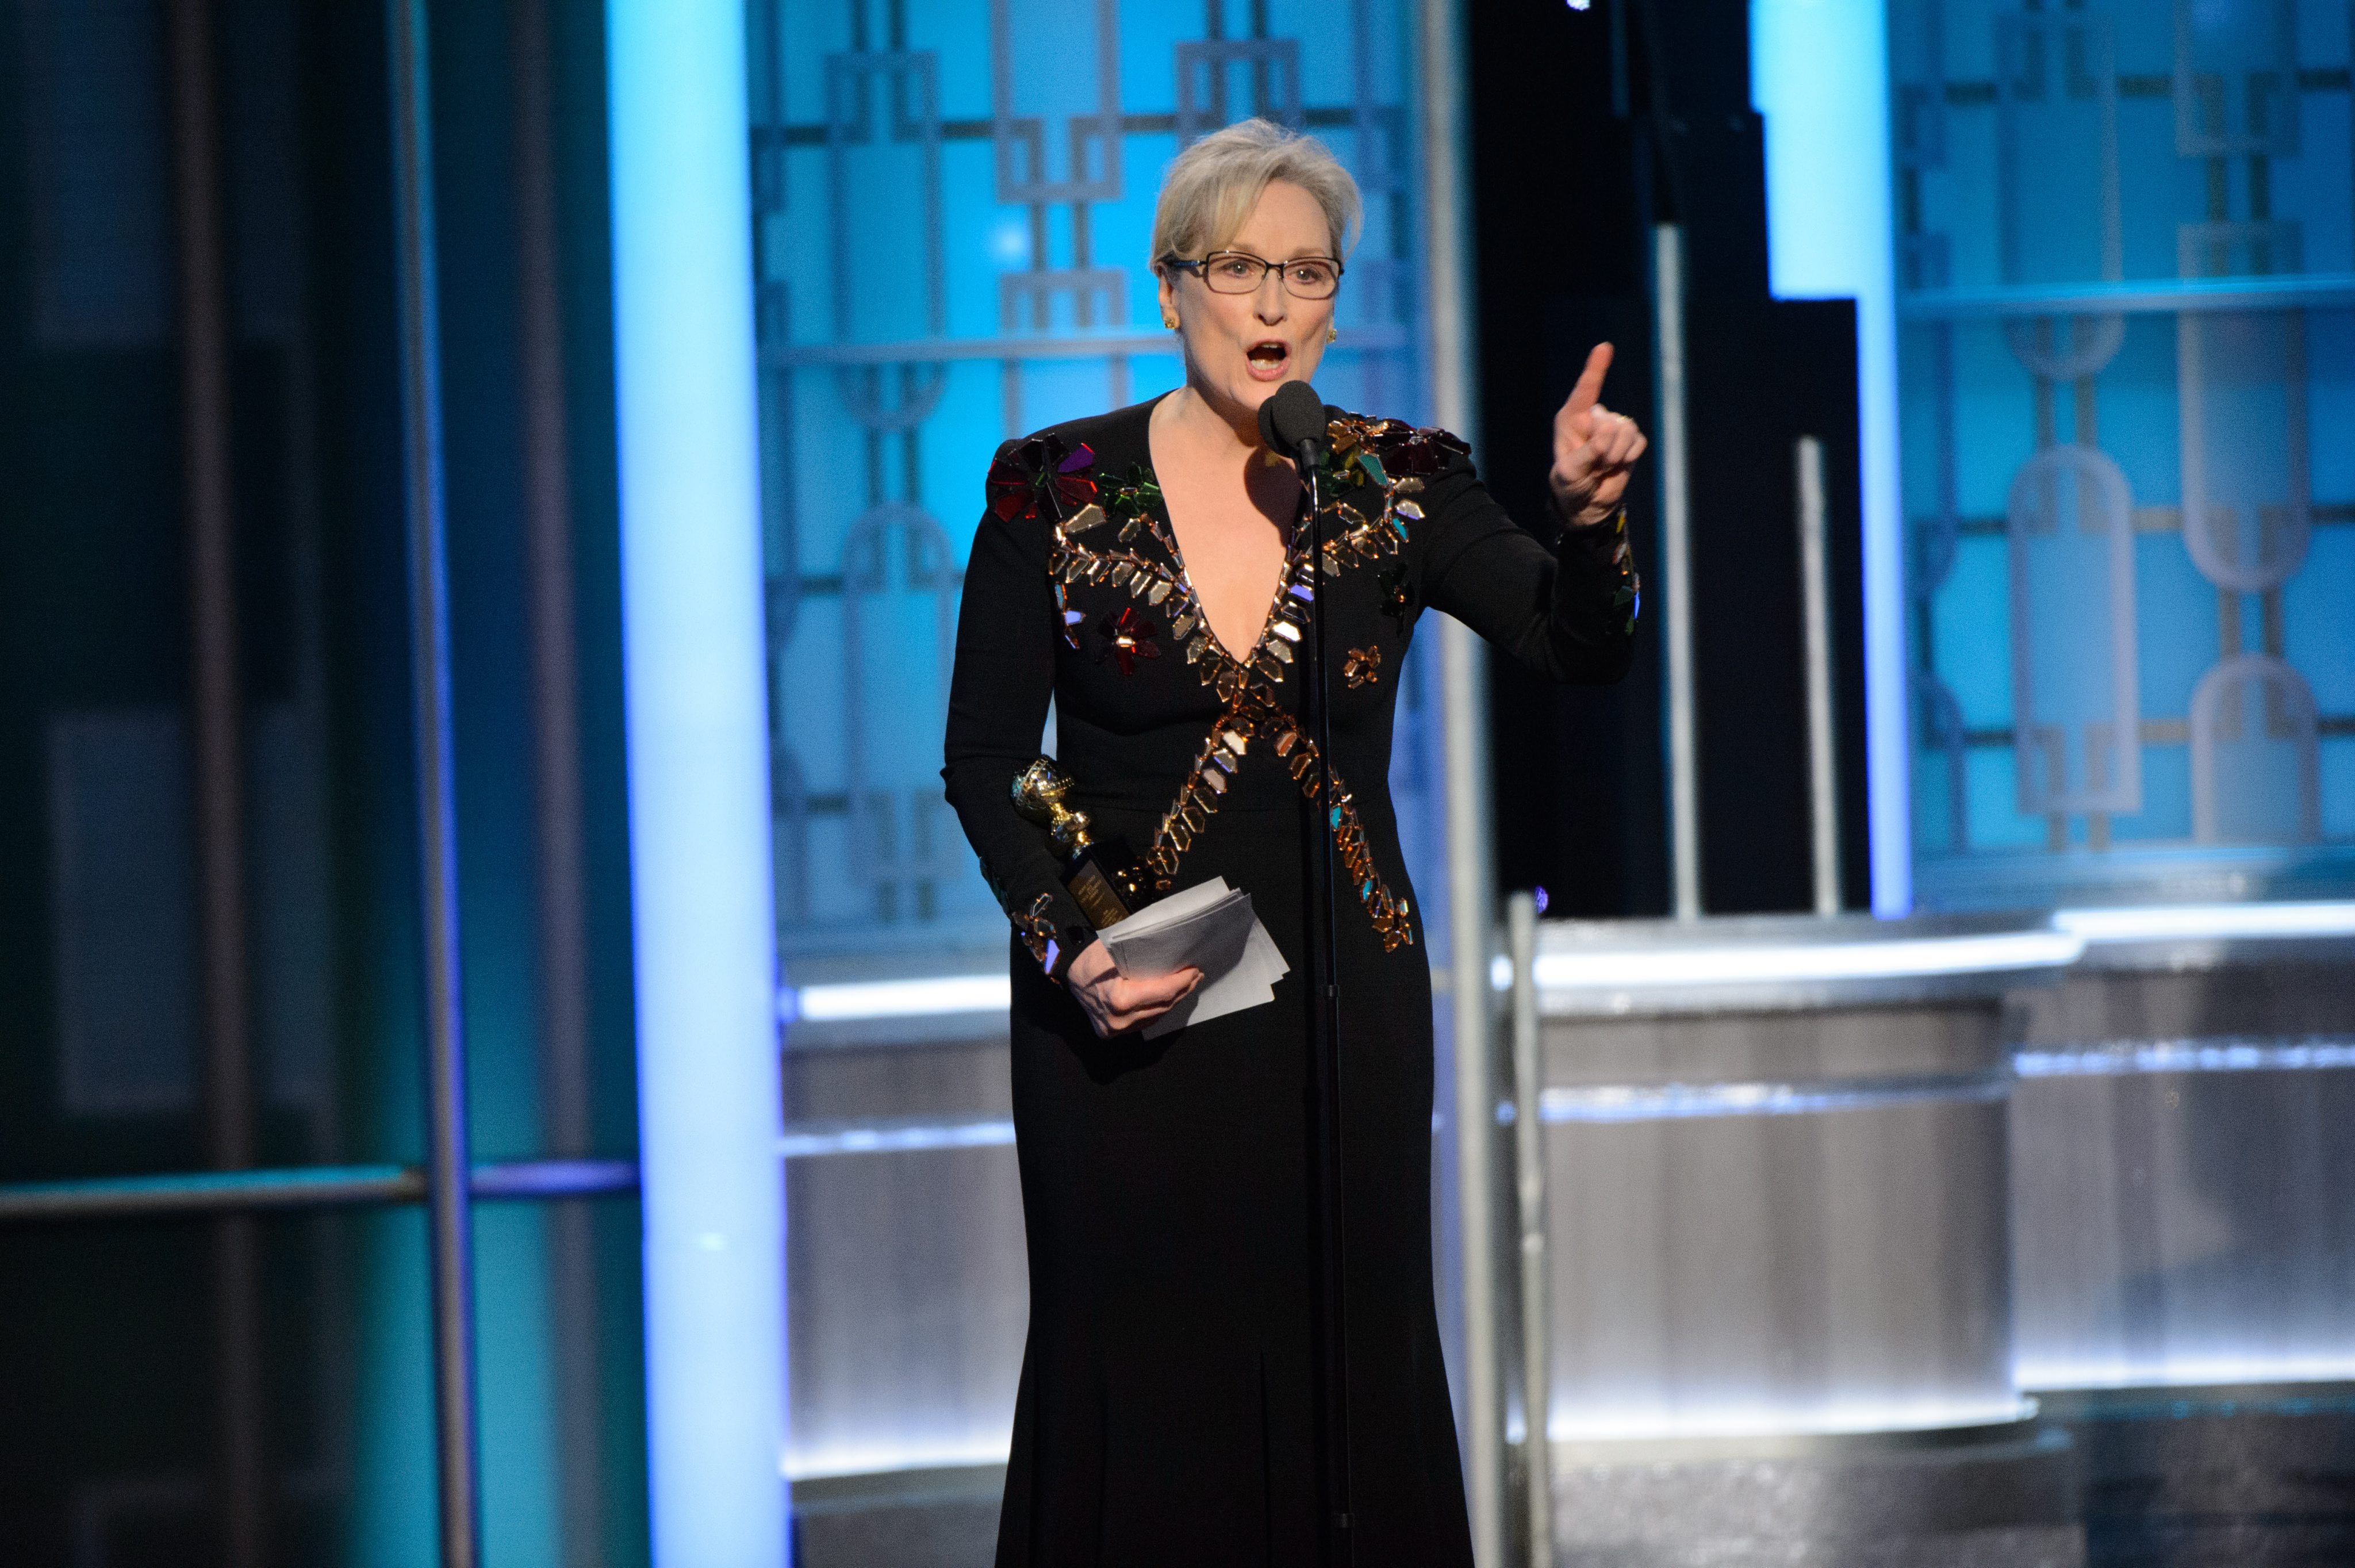 La actriz Meryl Streep aceptando el premio Cecil B. DeMille a toda una vida en la edición 74 de los Globo de Oro.